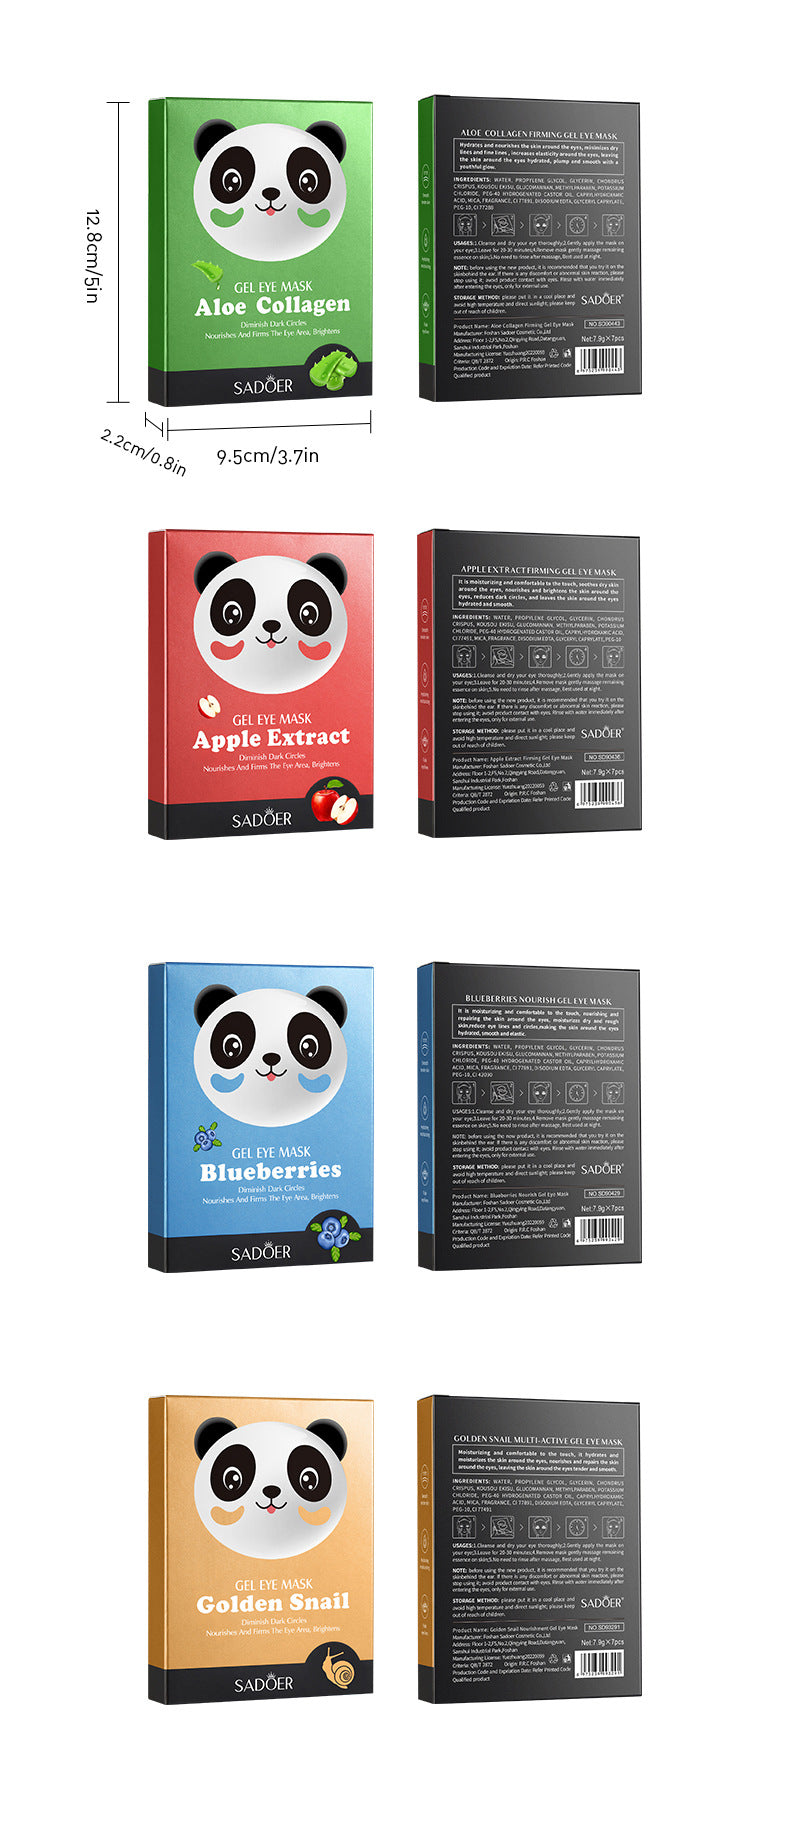 Wholesale Panda Golden Snail Gel Eye Mask, Diminish Dark Circles, OEM Nourishes and Firms Eye Masks 543